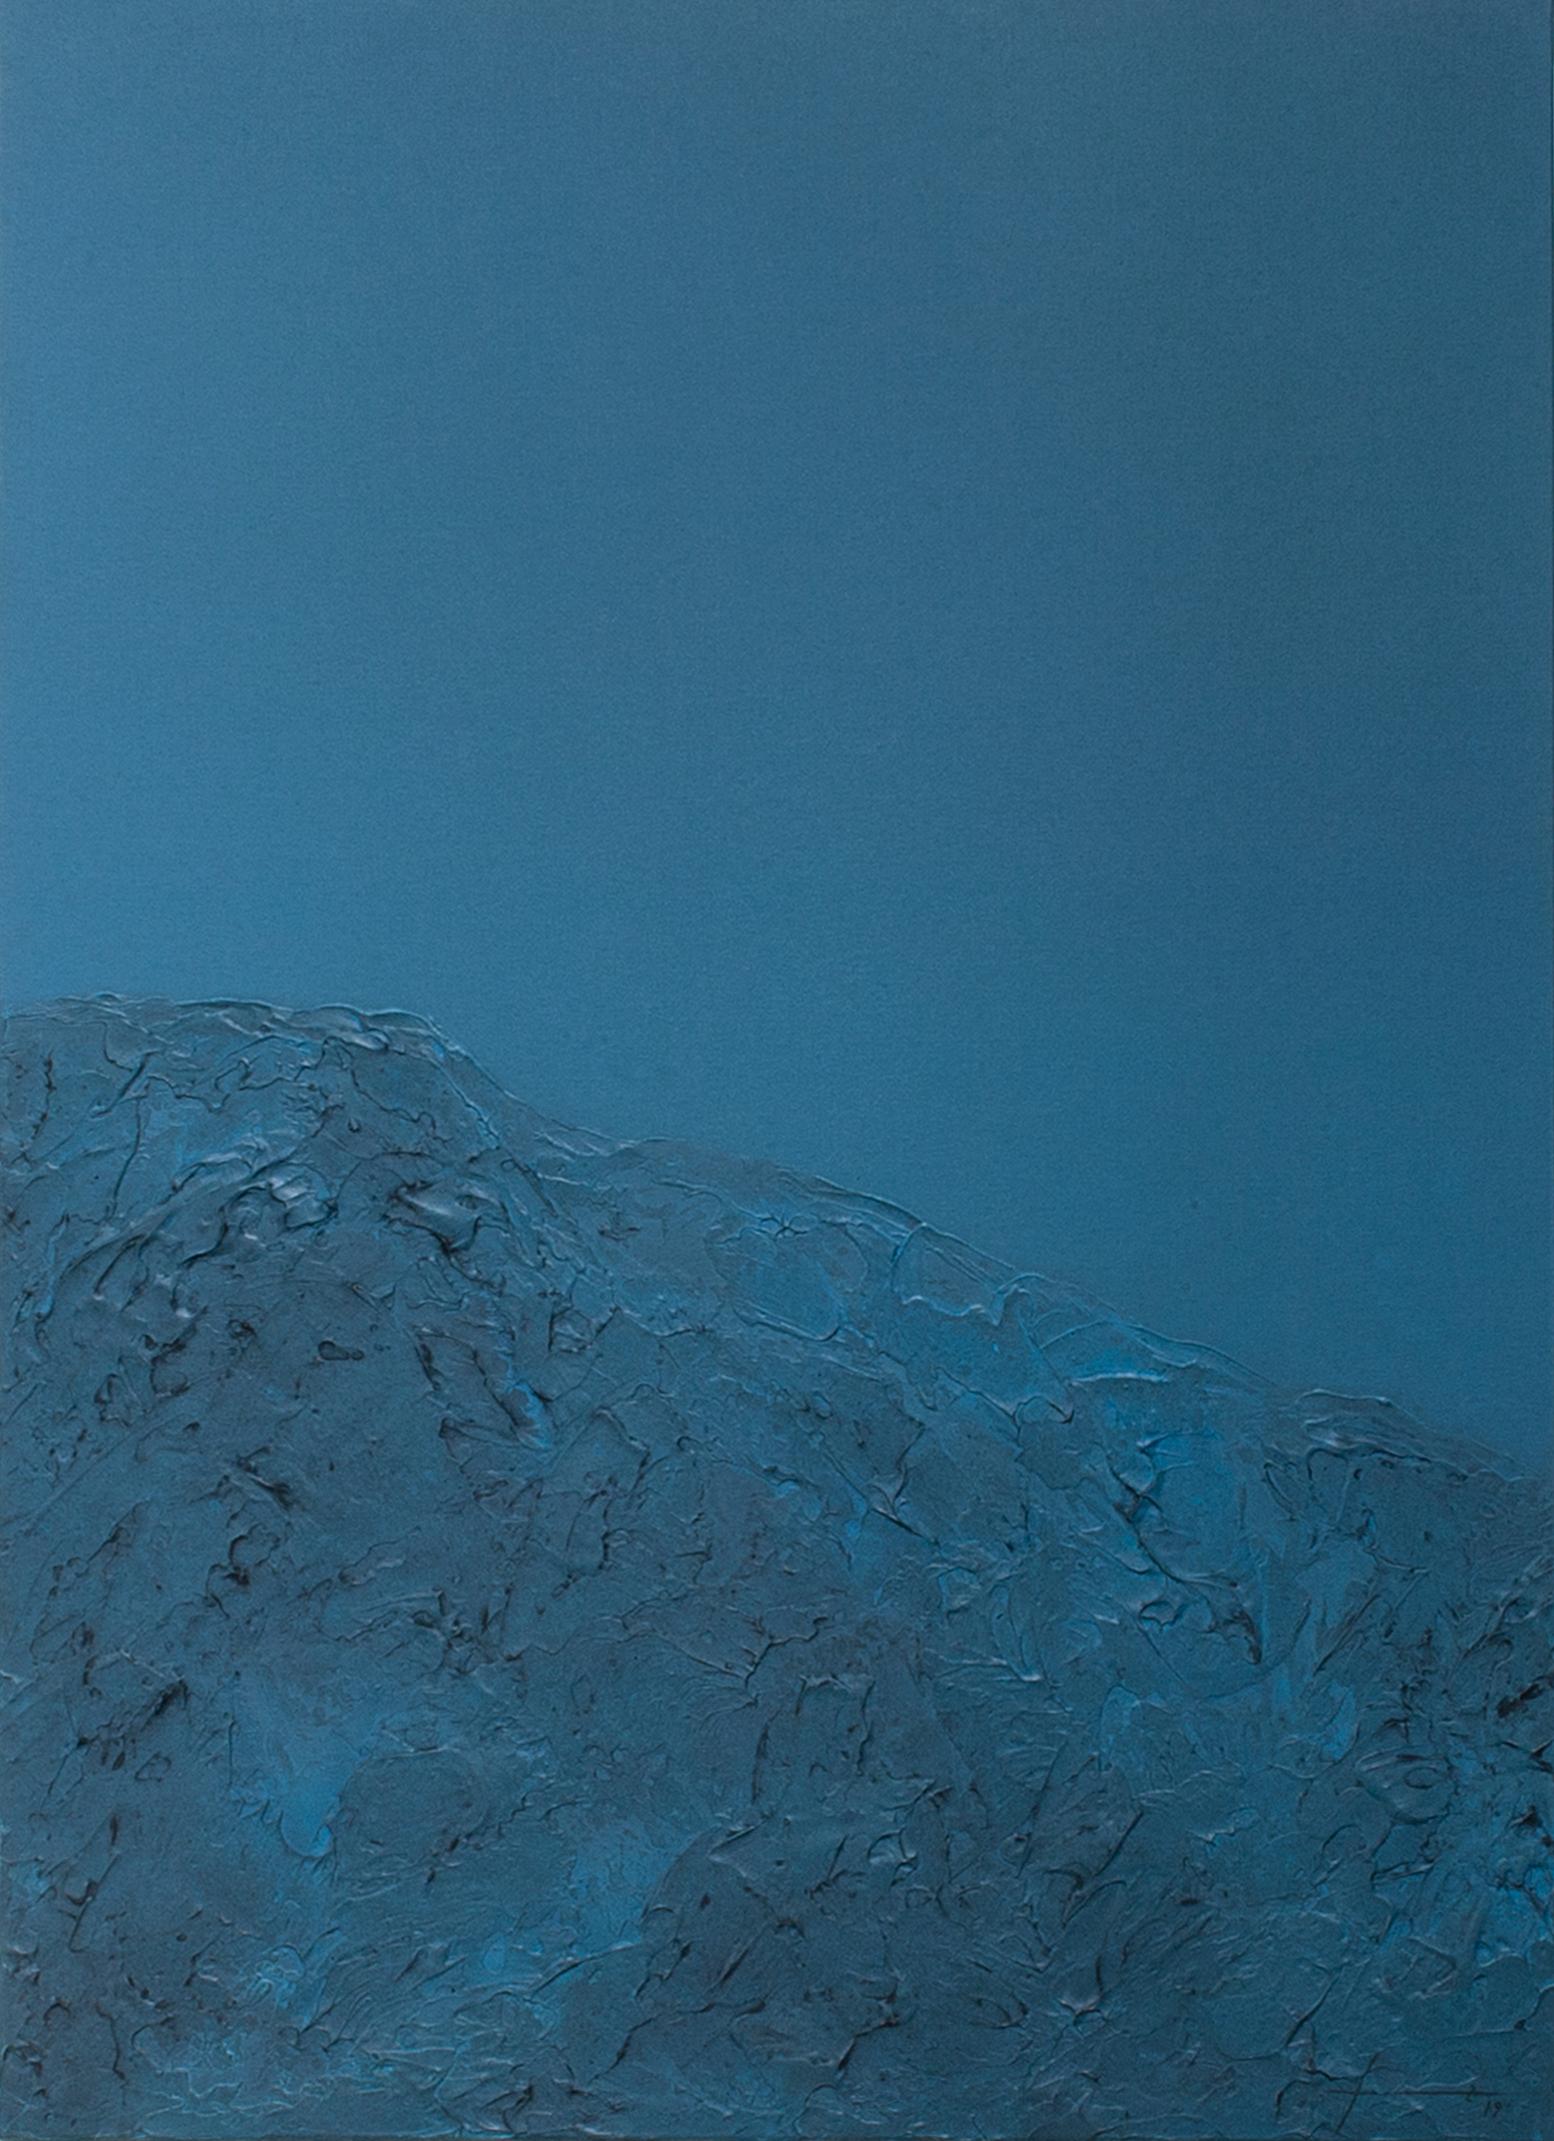 Black Mountains XIX - 21st Century, Contemporary Art, Landscape Painting